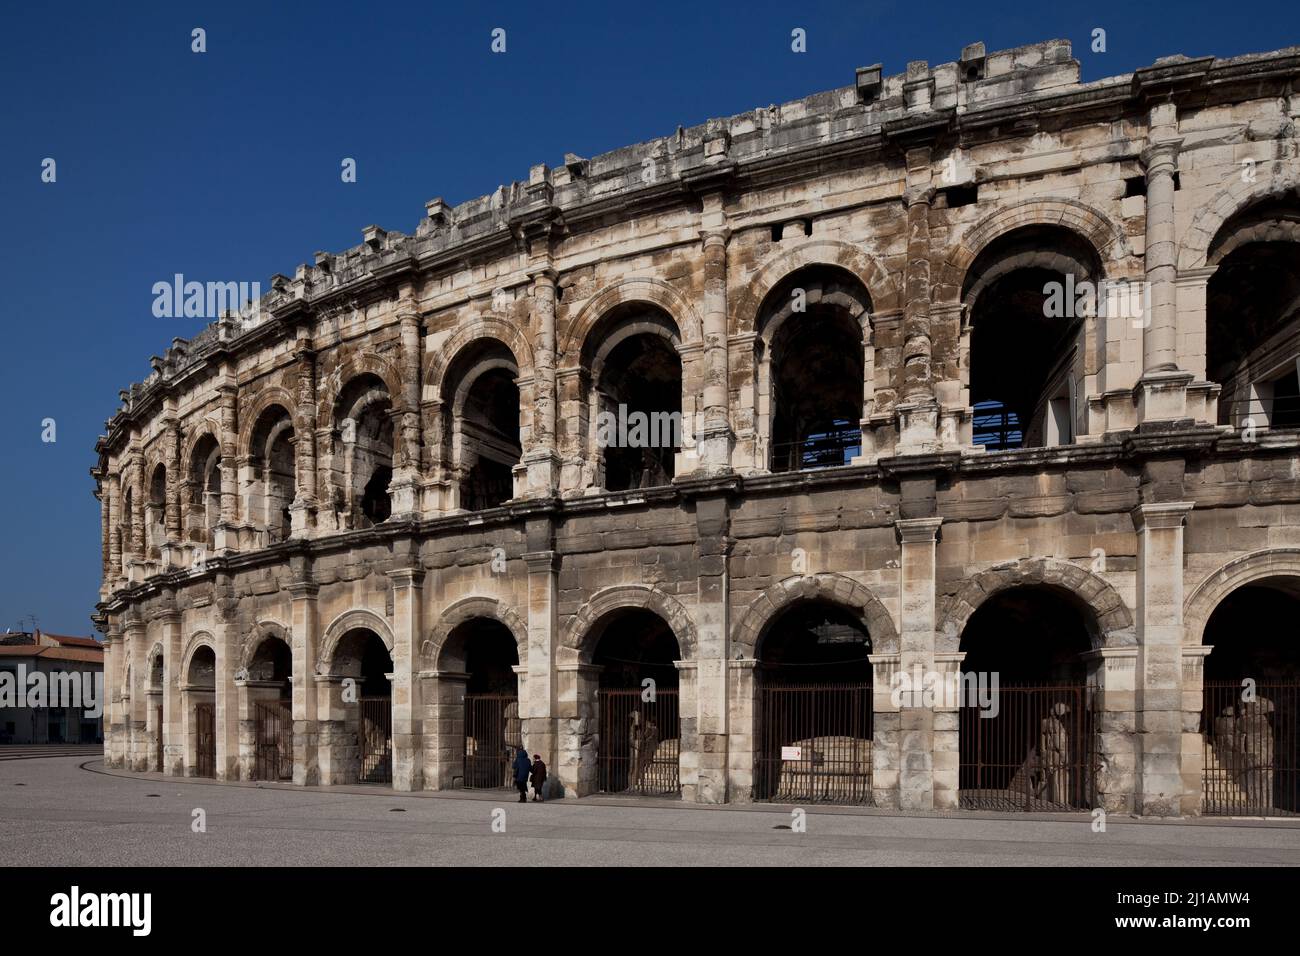 Frankr Nîmes Amphitheater 59921 Außenansicht zweigeschossiger Aufbau zwischen den Rundbogenarkaden unten Pilaster oben dorische Wandsäulen darüber Att Stock Photo